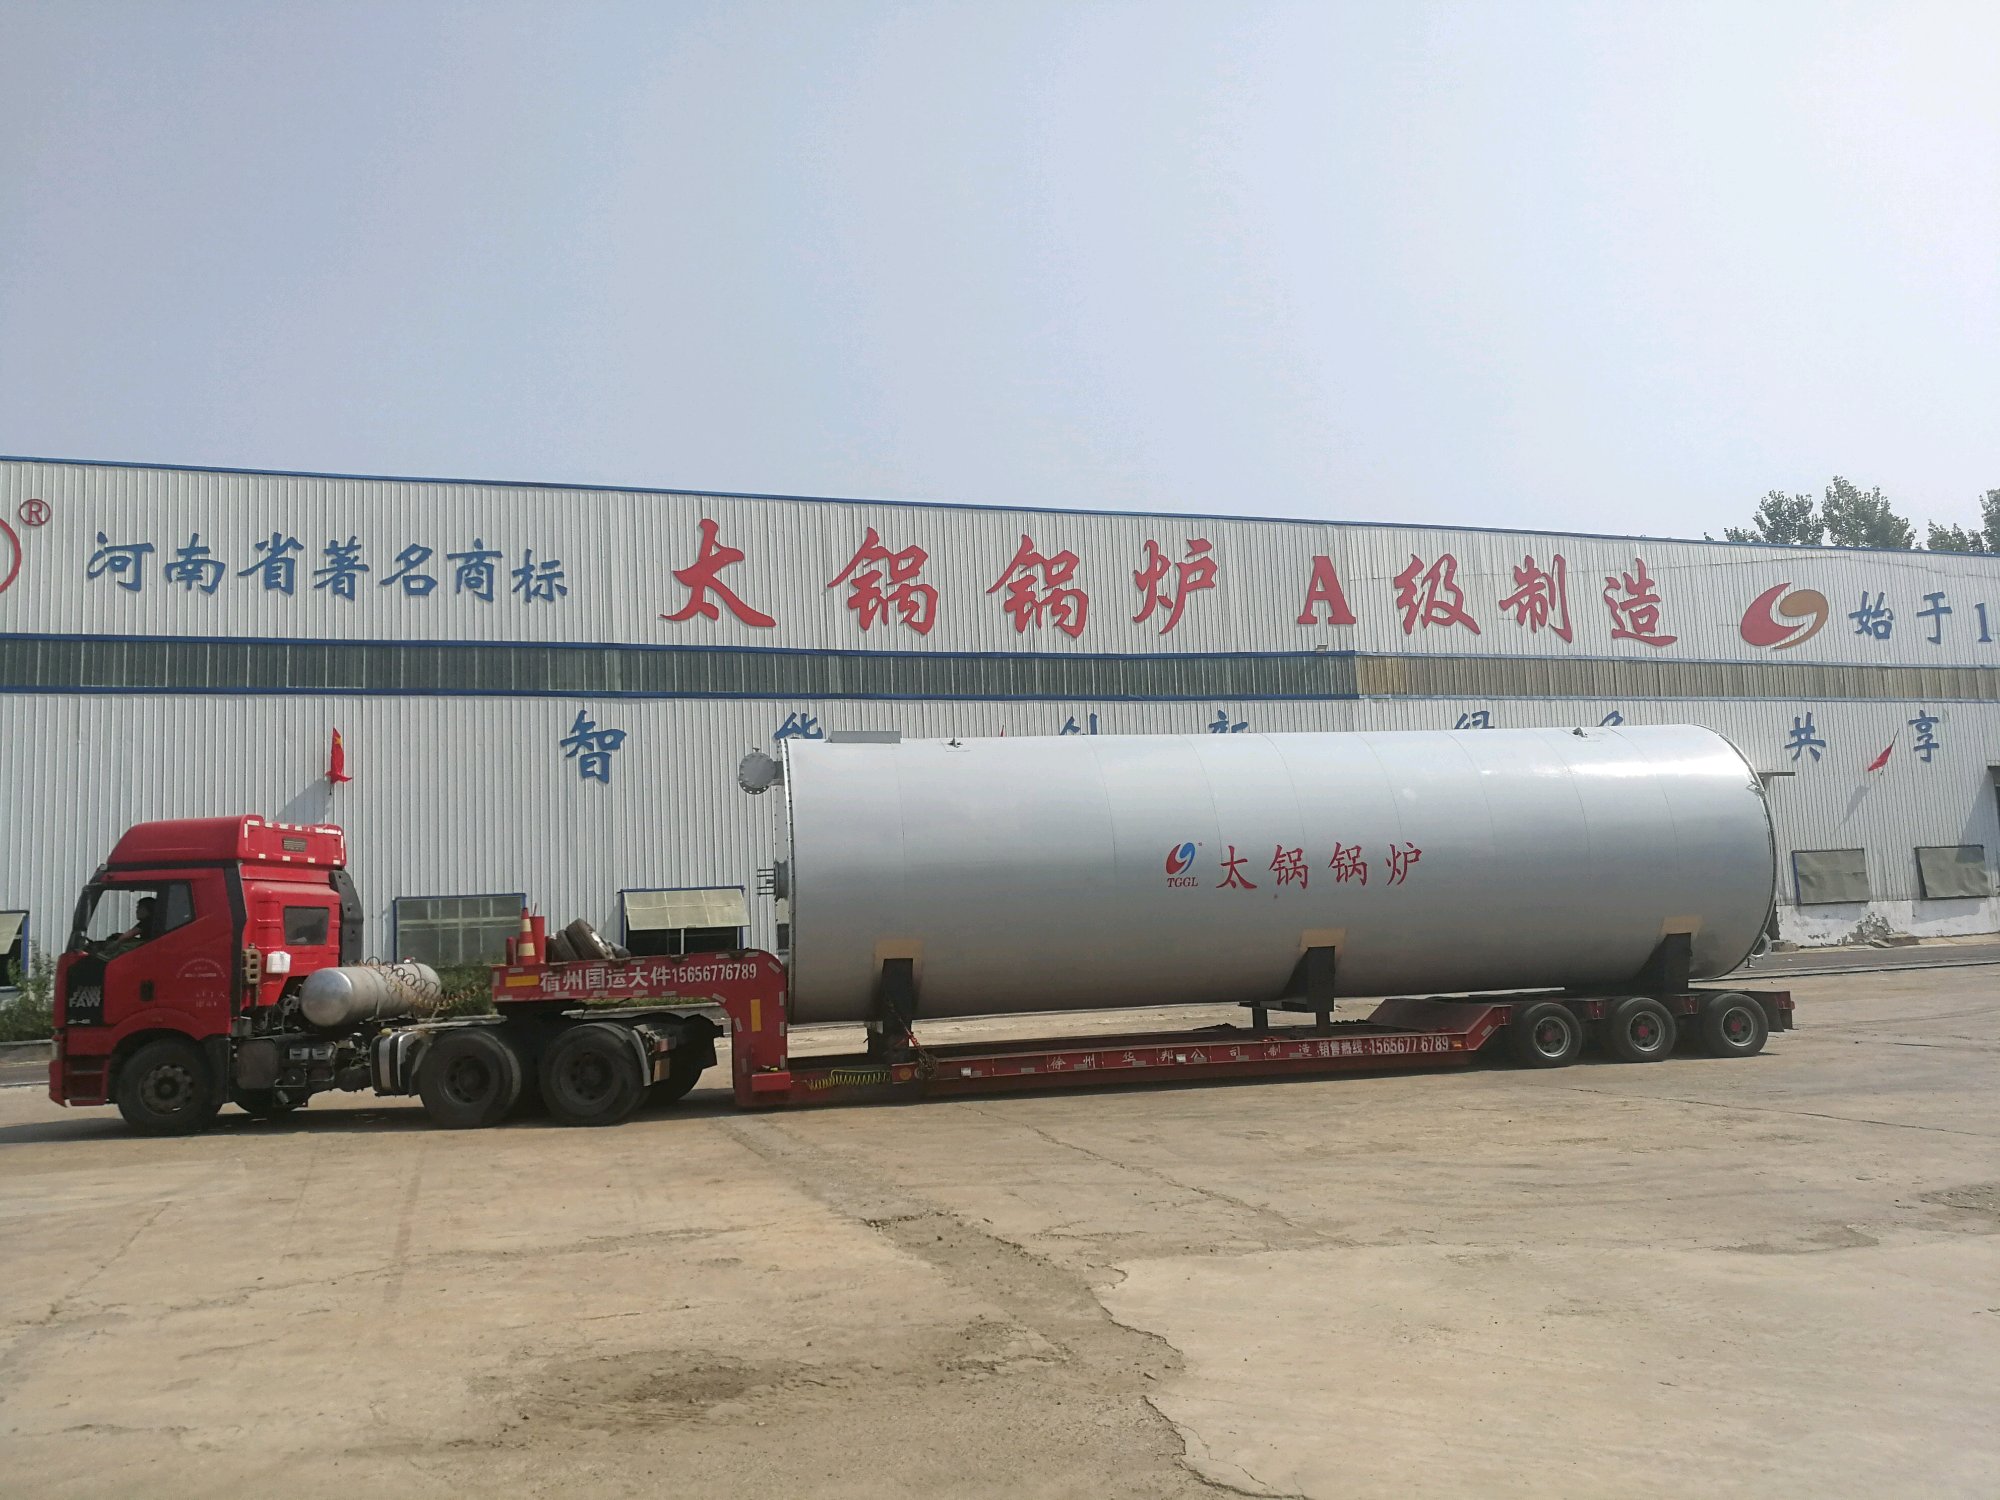 晋州太锅锅炉制造有限公司燃气锅炉和导热油炉发货中